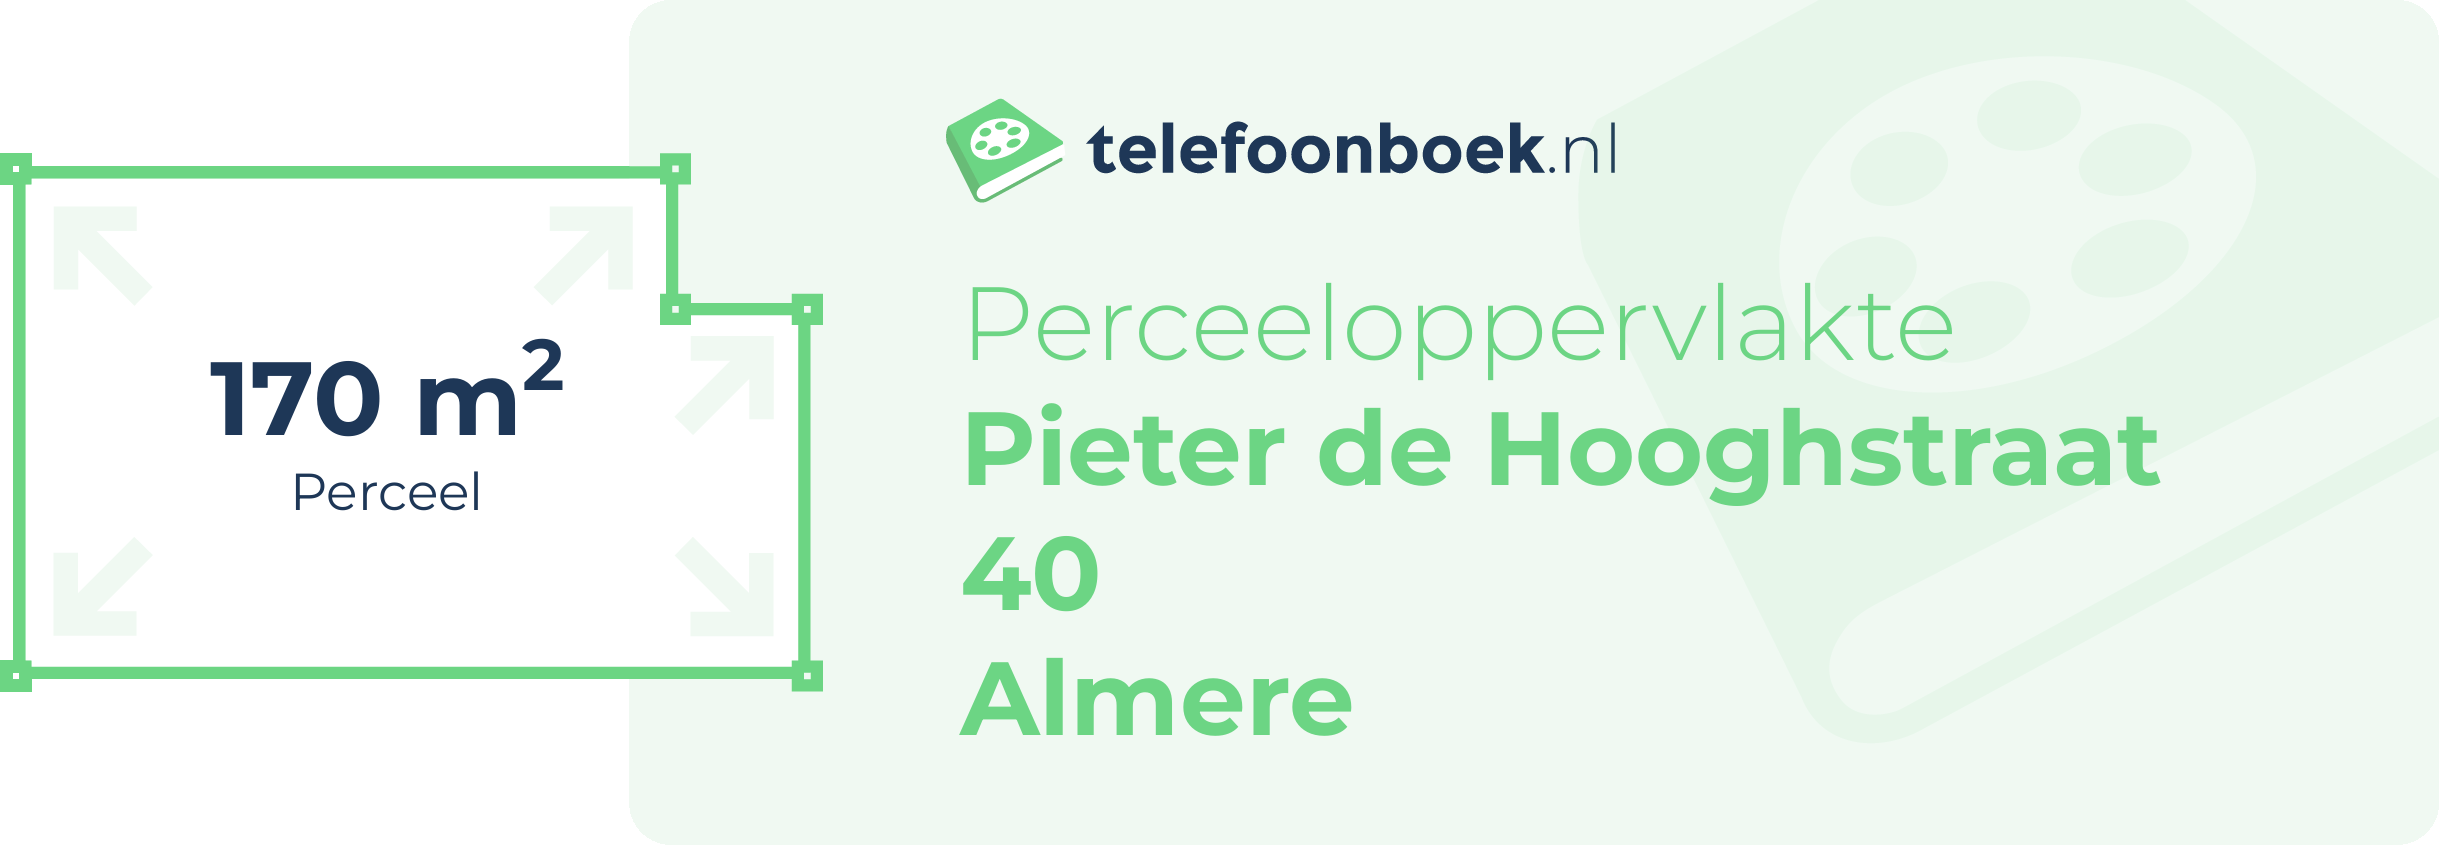 Perceeloppervlakte Pieter De Hooghstraat 40 Almere